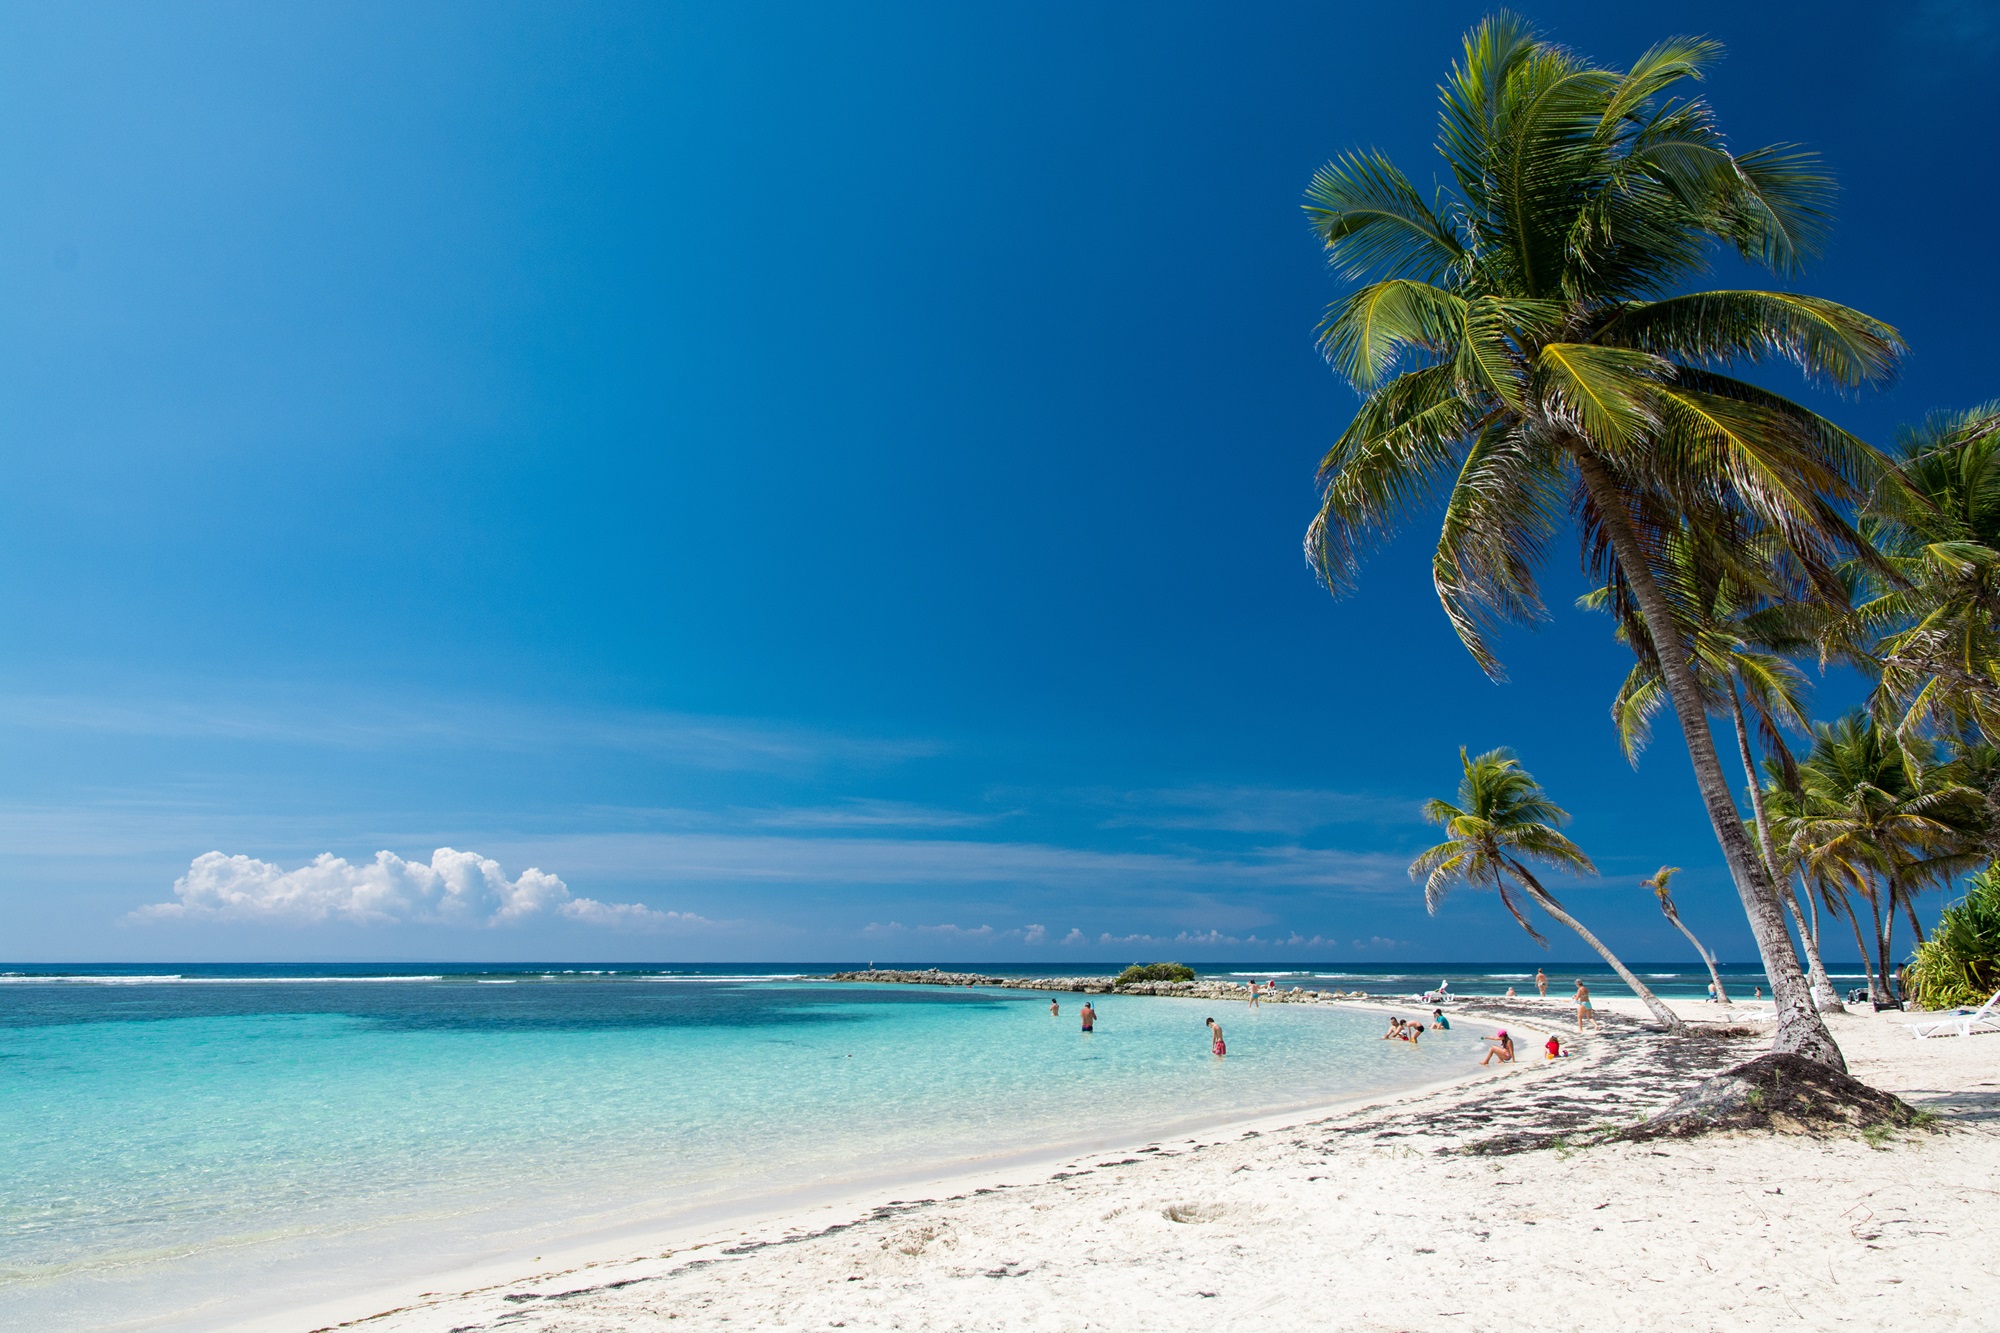 Partir en Guadeloupe pour profiter des plages paradisiaques et des eaux bleu turquoise. ©Sébastien KOMARNICKI, Adobe.